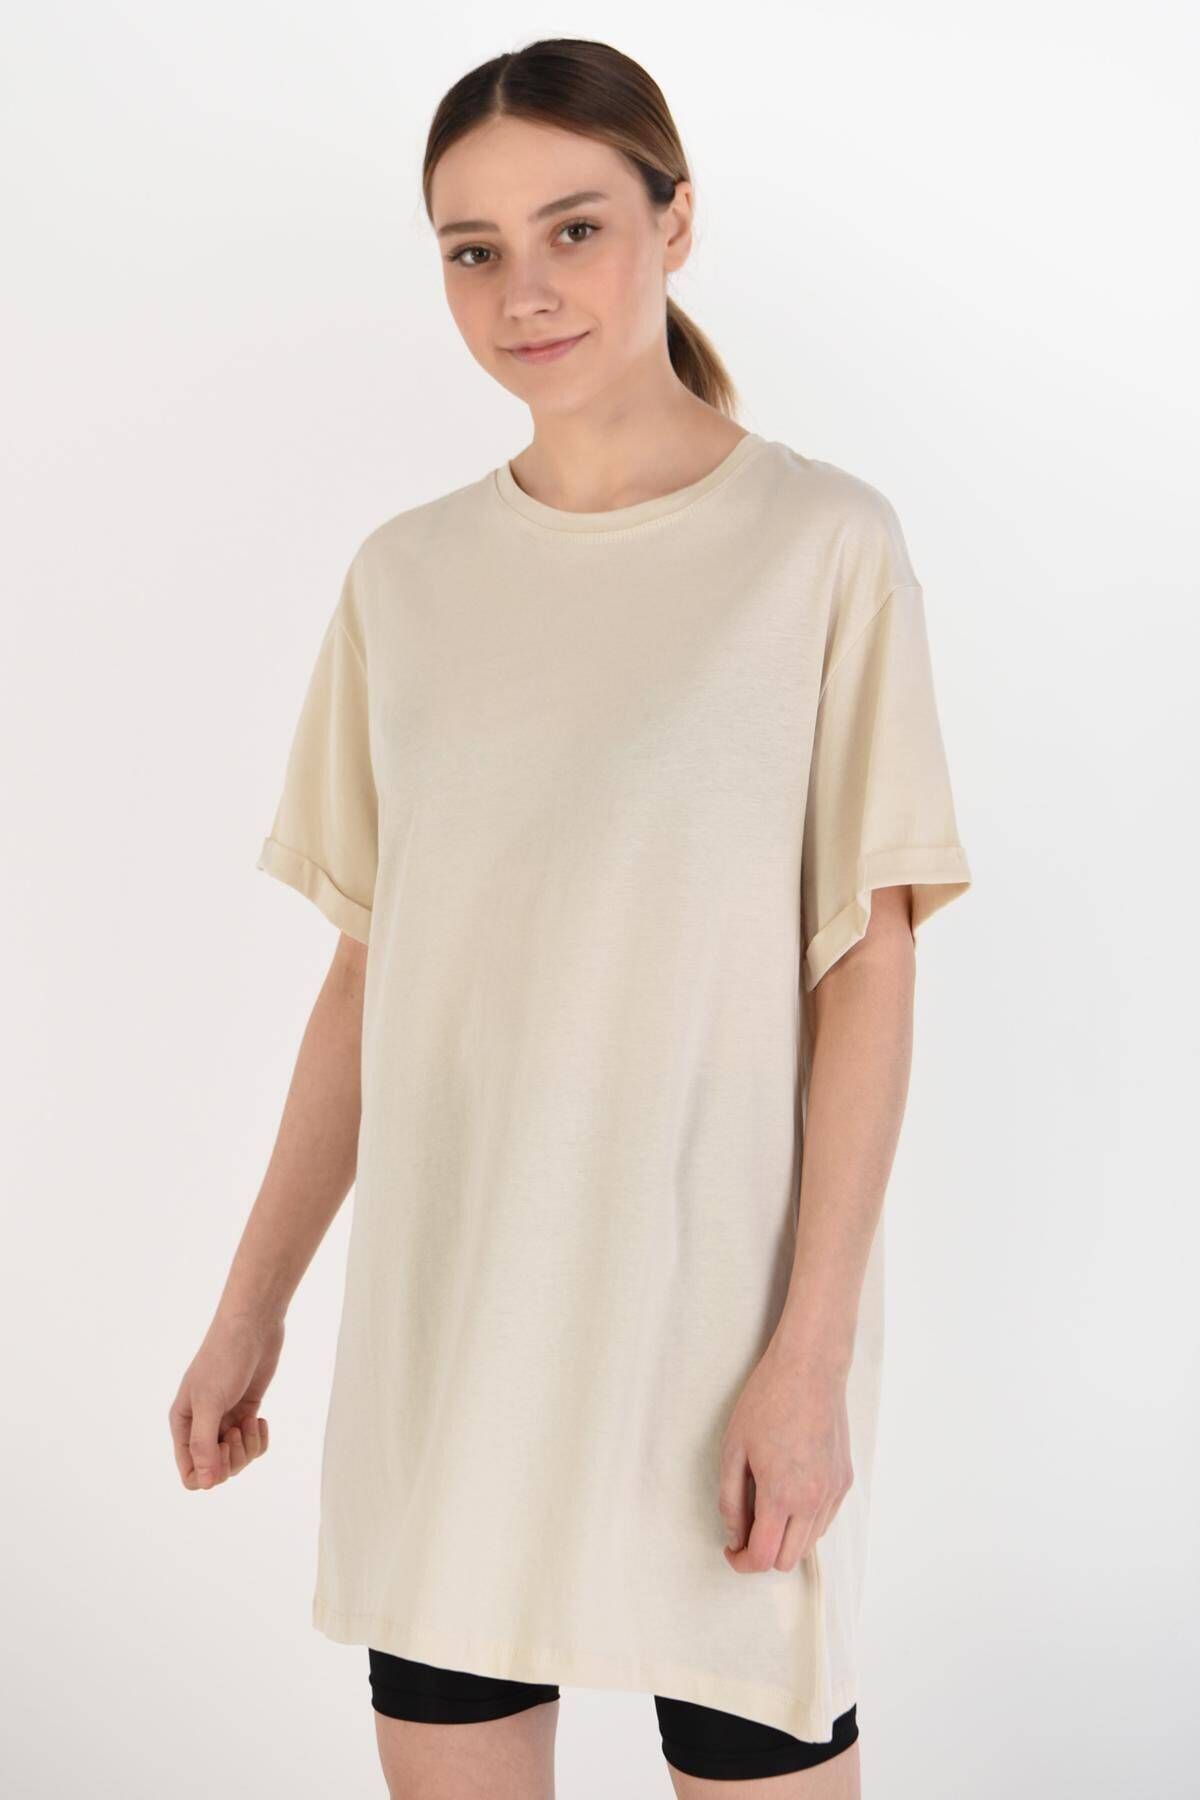 Addax Kadın Taş Basic T-Shirt P0341 - K8 Adx-0000022048